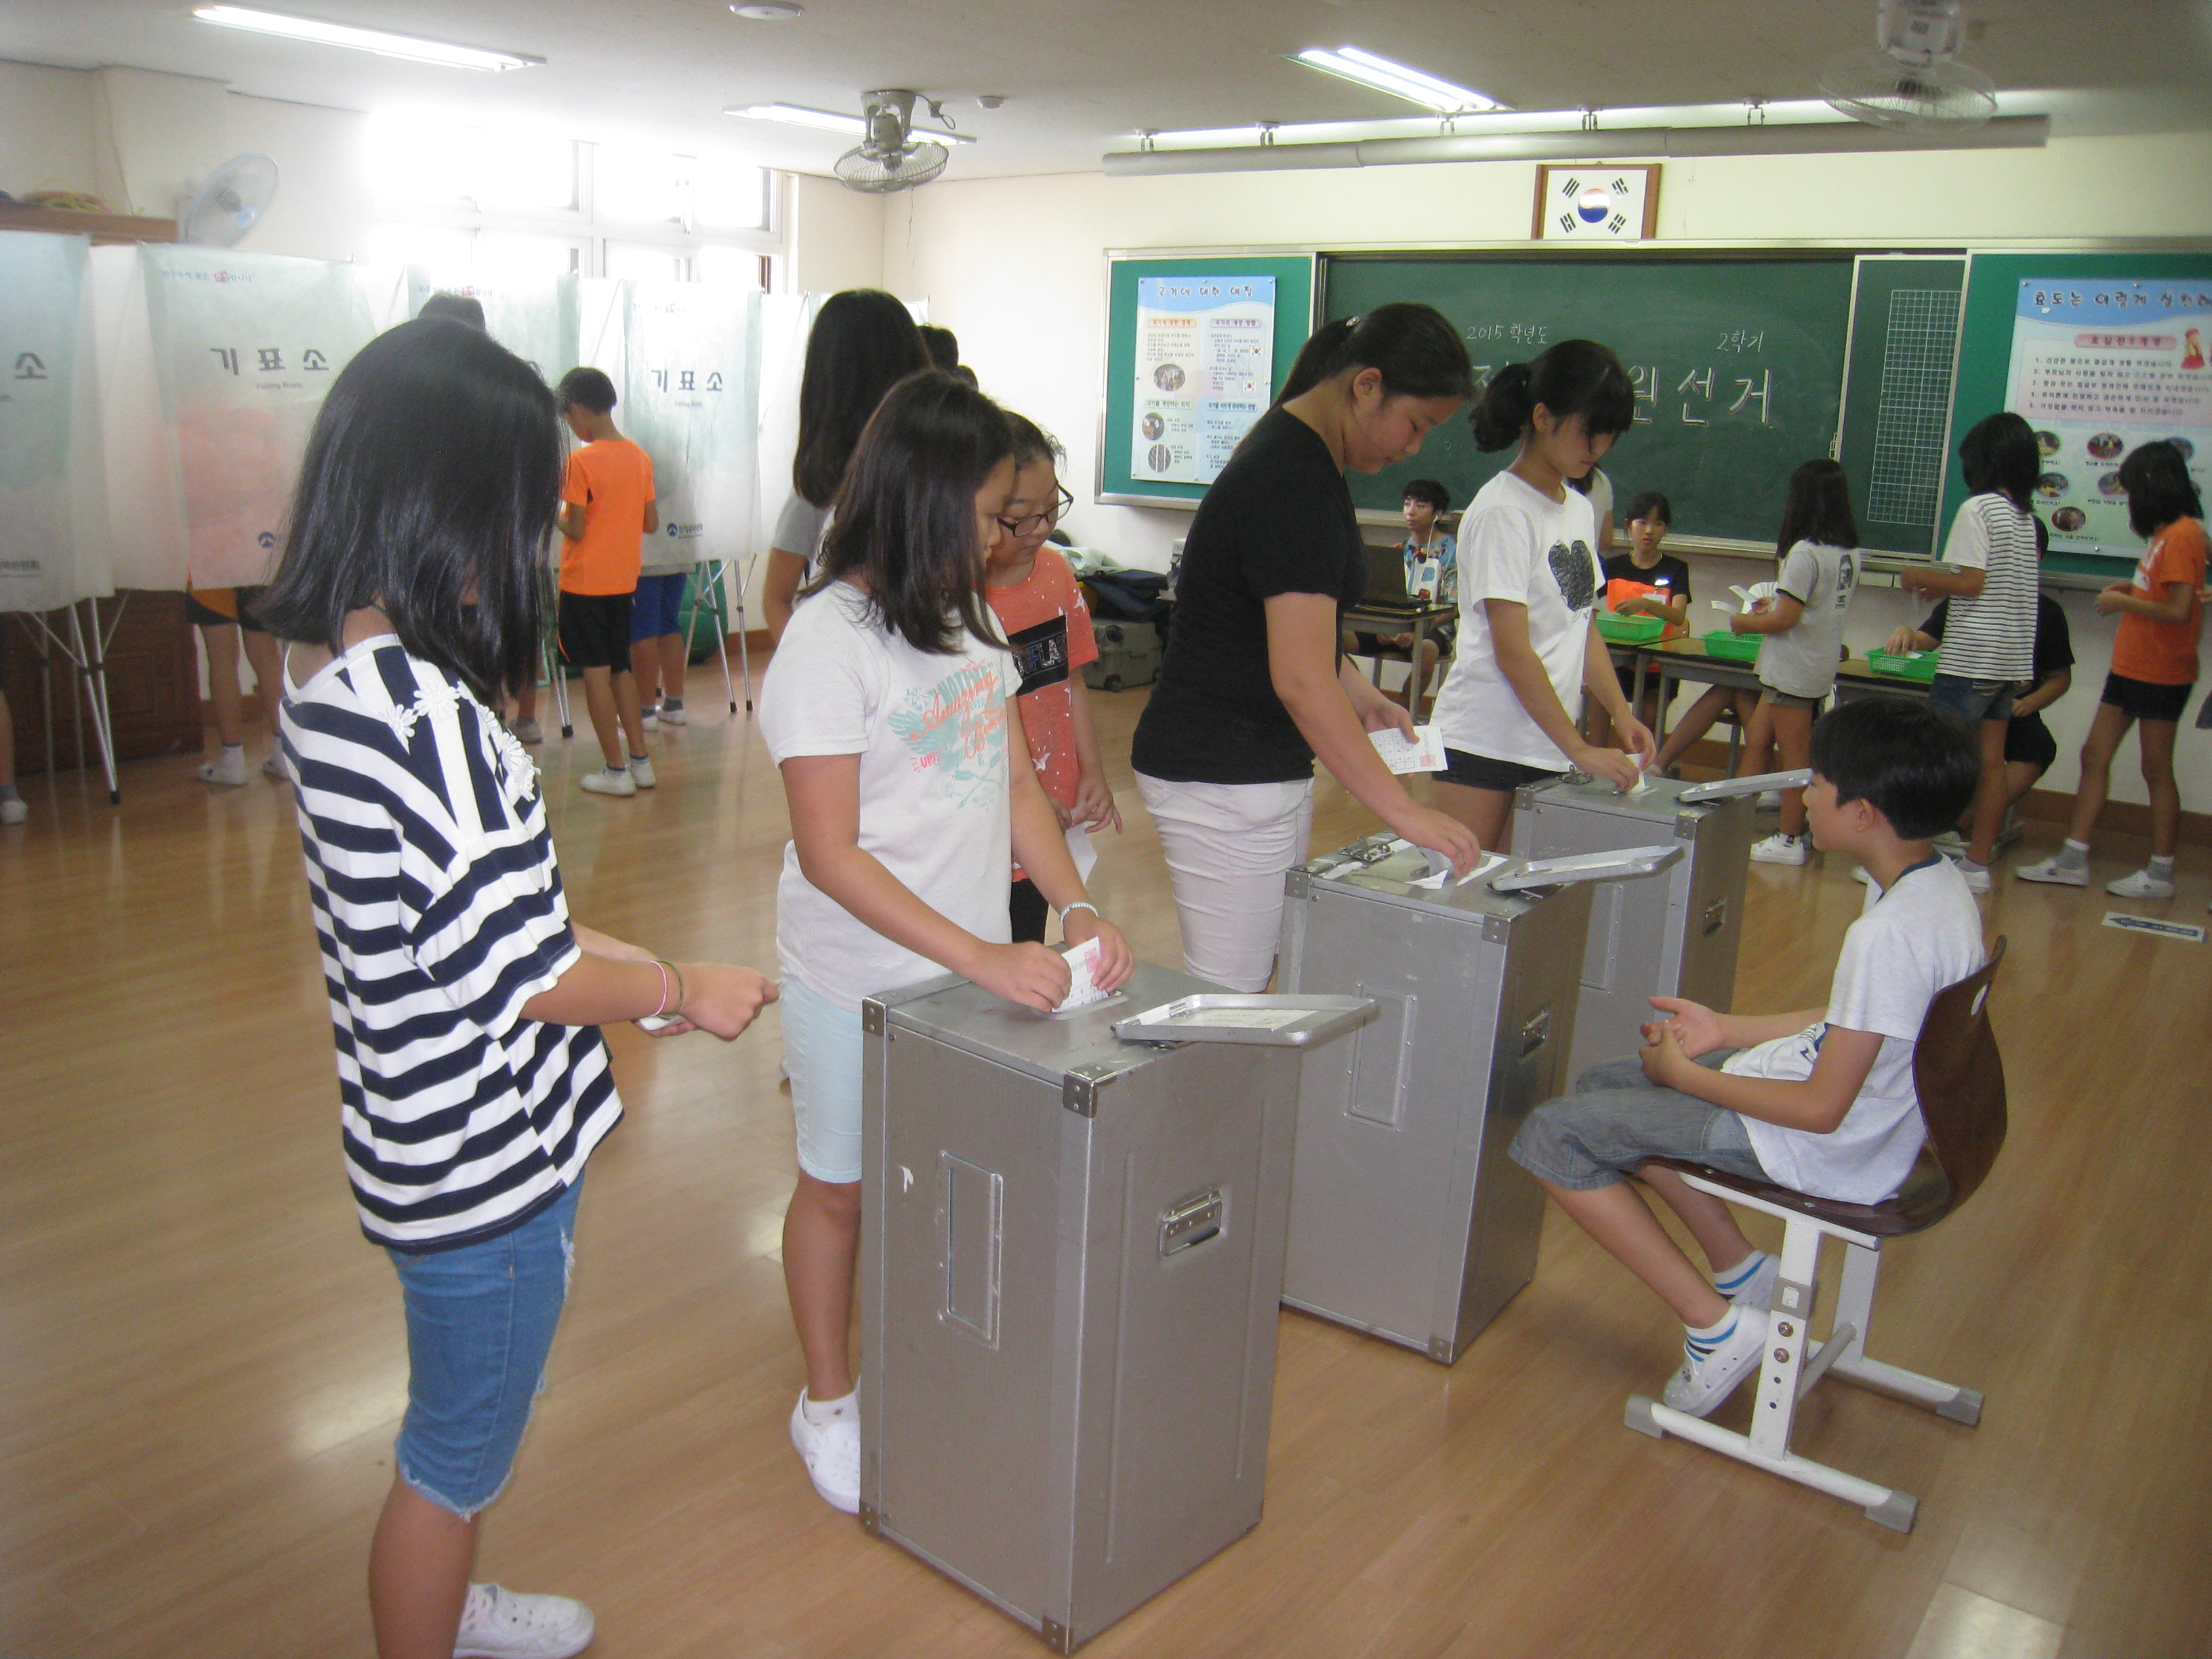 학생들이 기표소에서 기표후 투표함에 투표지를 투입하고 있는 모습의 사진입니다.